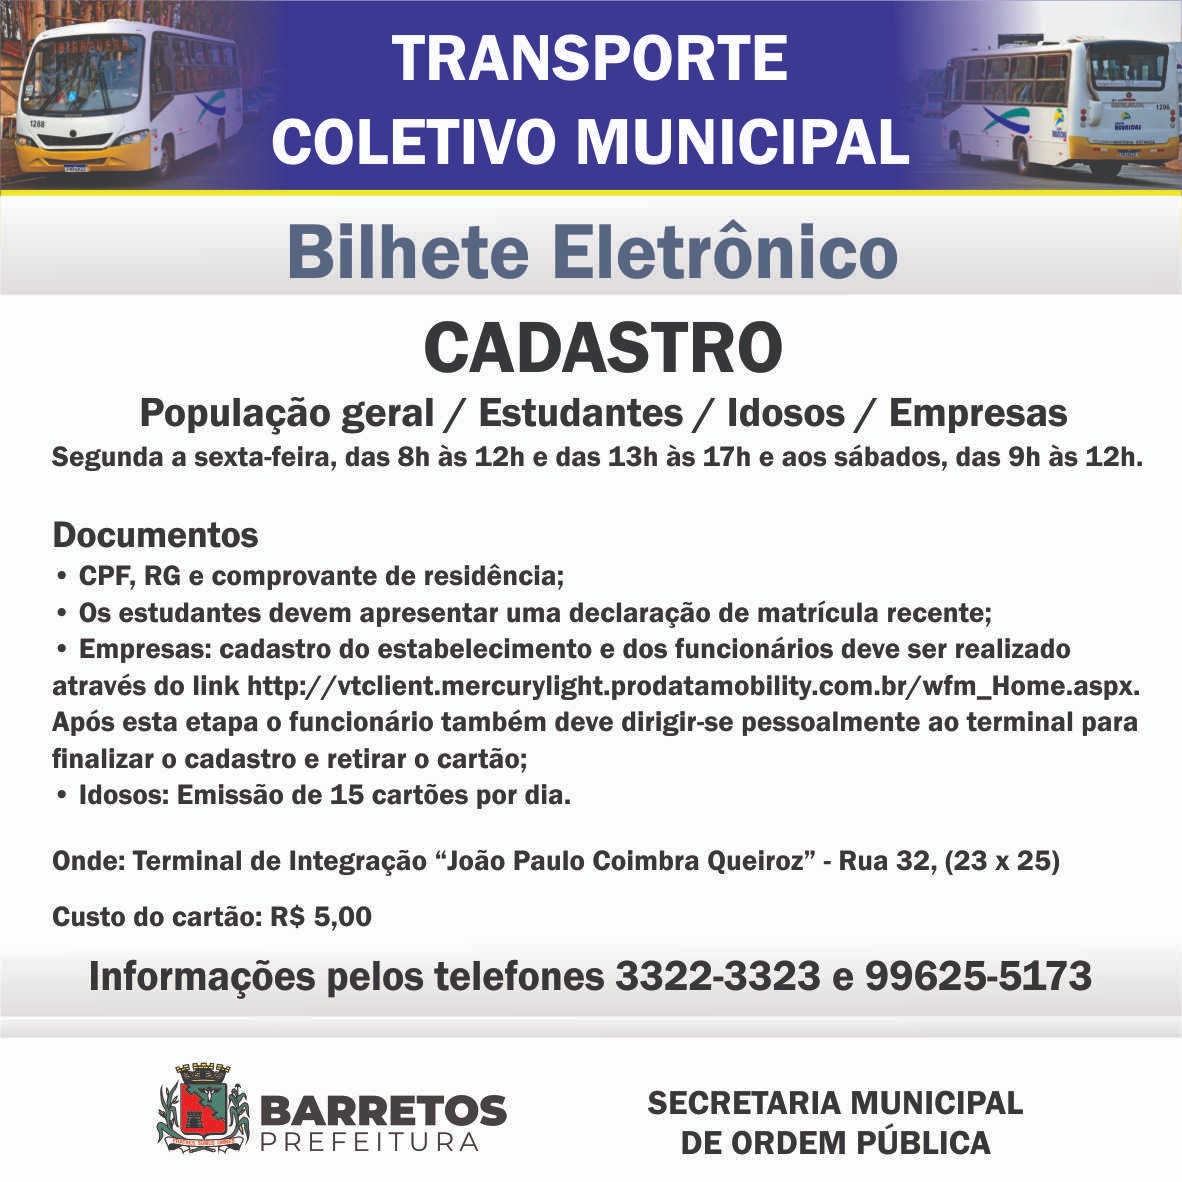 Emissão do cartão do Transporte Coletivo Municipal de Barretos continua no Terminal